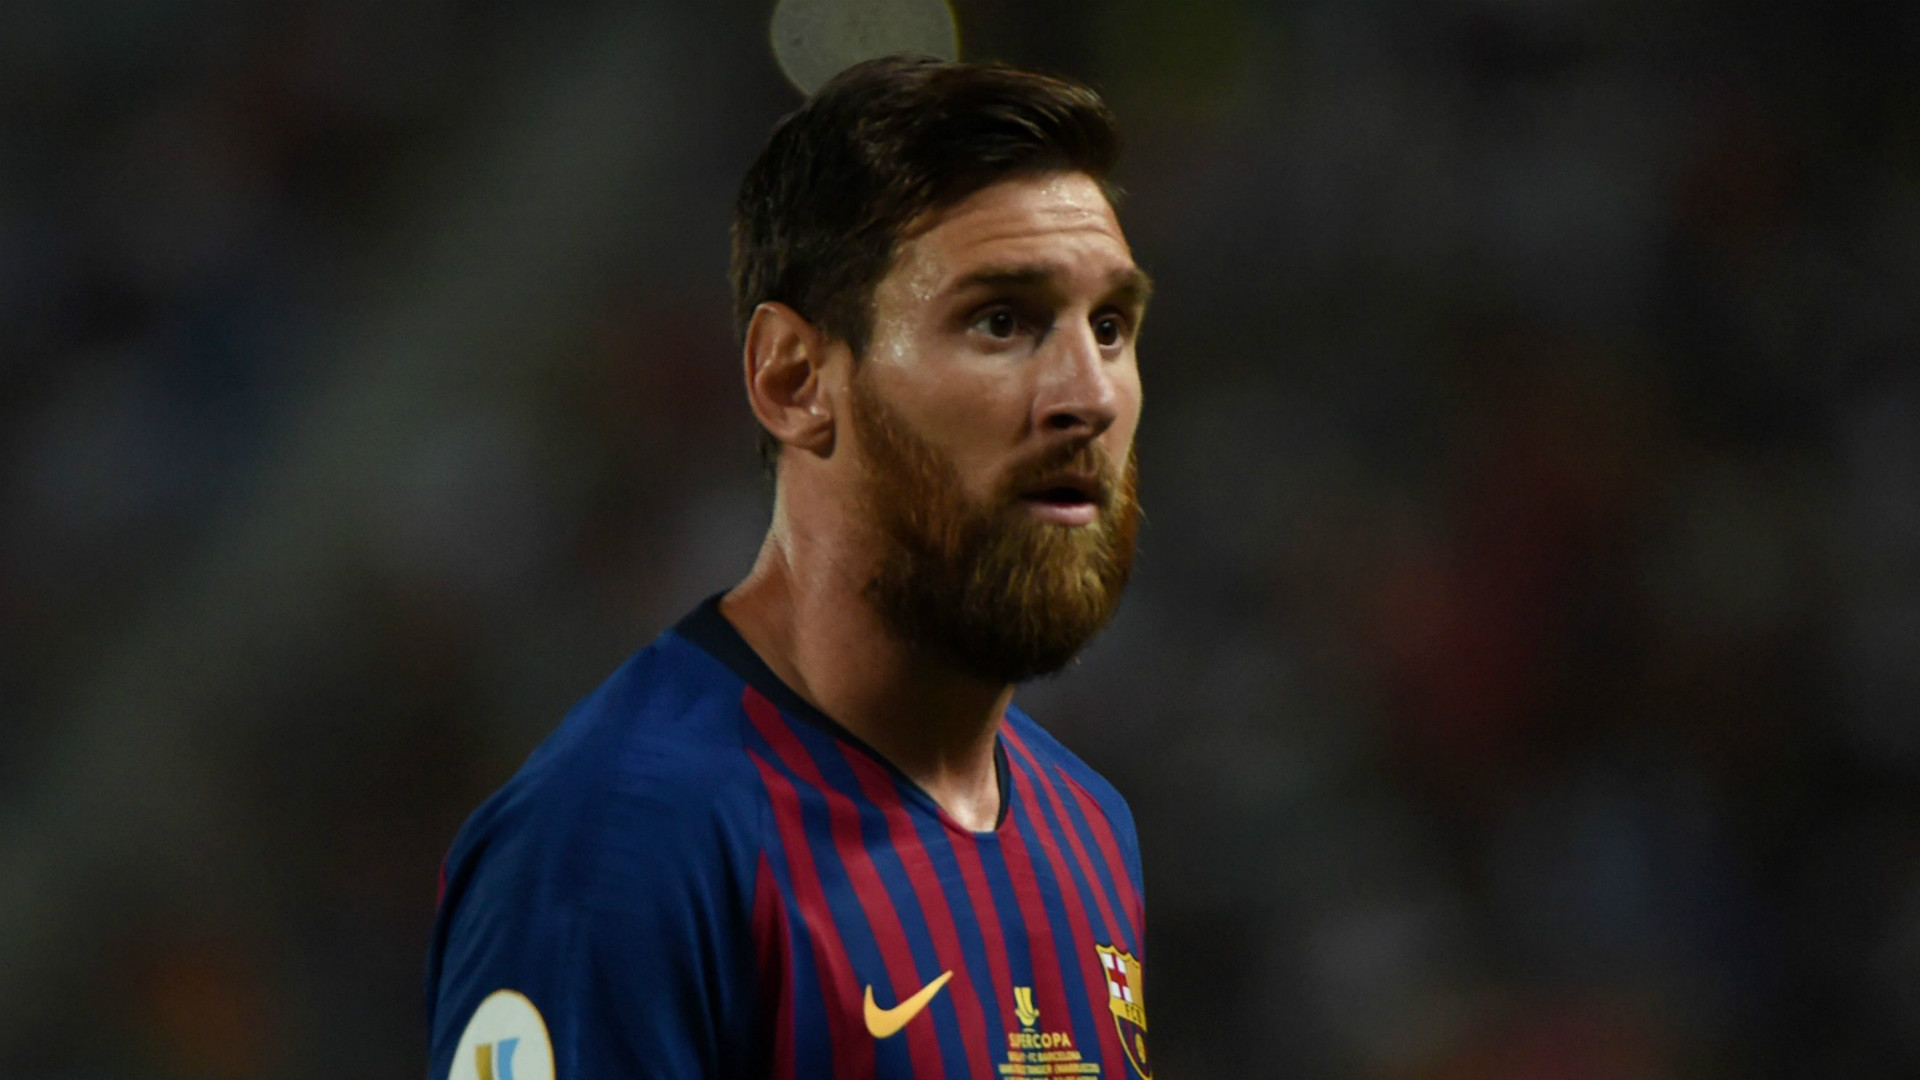 nudo cuerno Humano Cuáles son las botas de Messi para la temporada 2018-2019 — All Football App